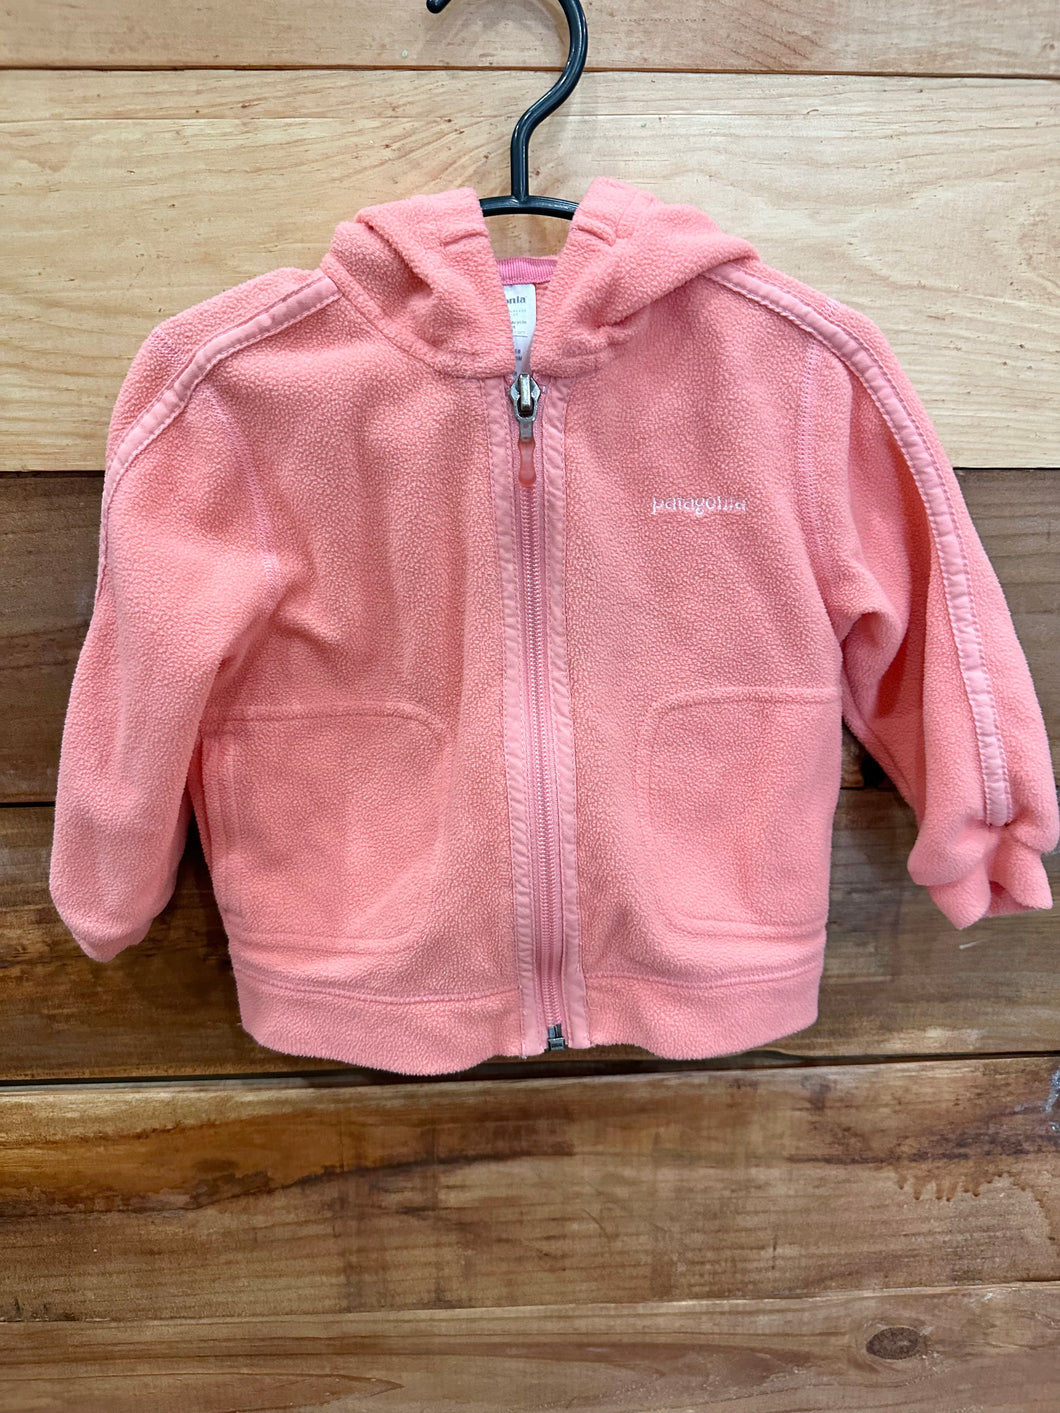 Patagonia Pink Fleece Jacket Size 6m